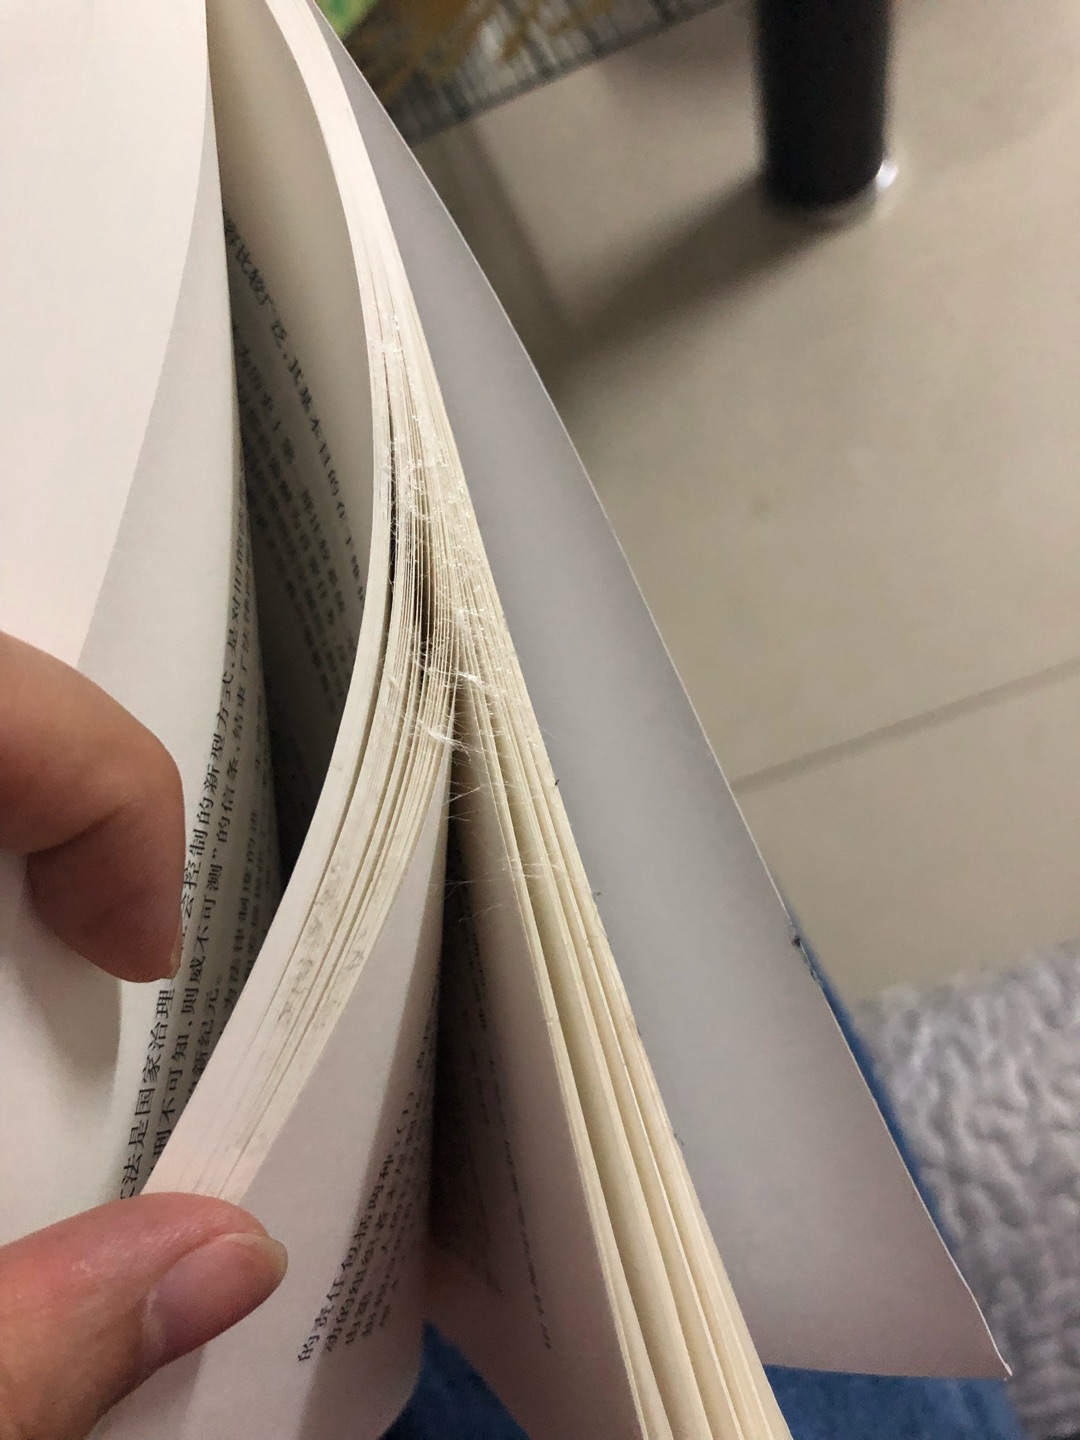 这个书怎么回事，粘了好多页的胶，后面的纸全粘一块了，弄了一手的胶